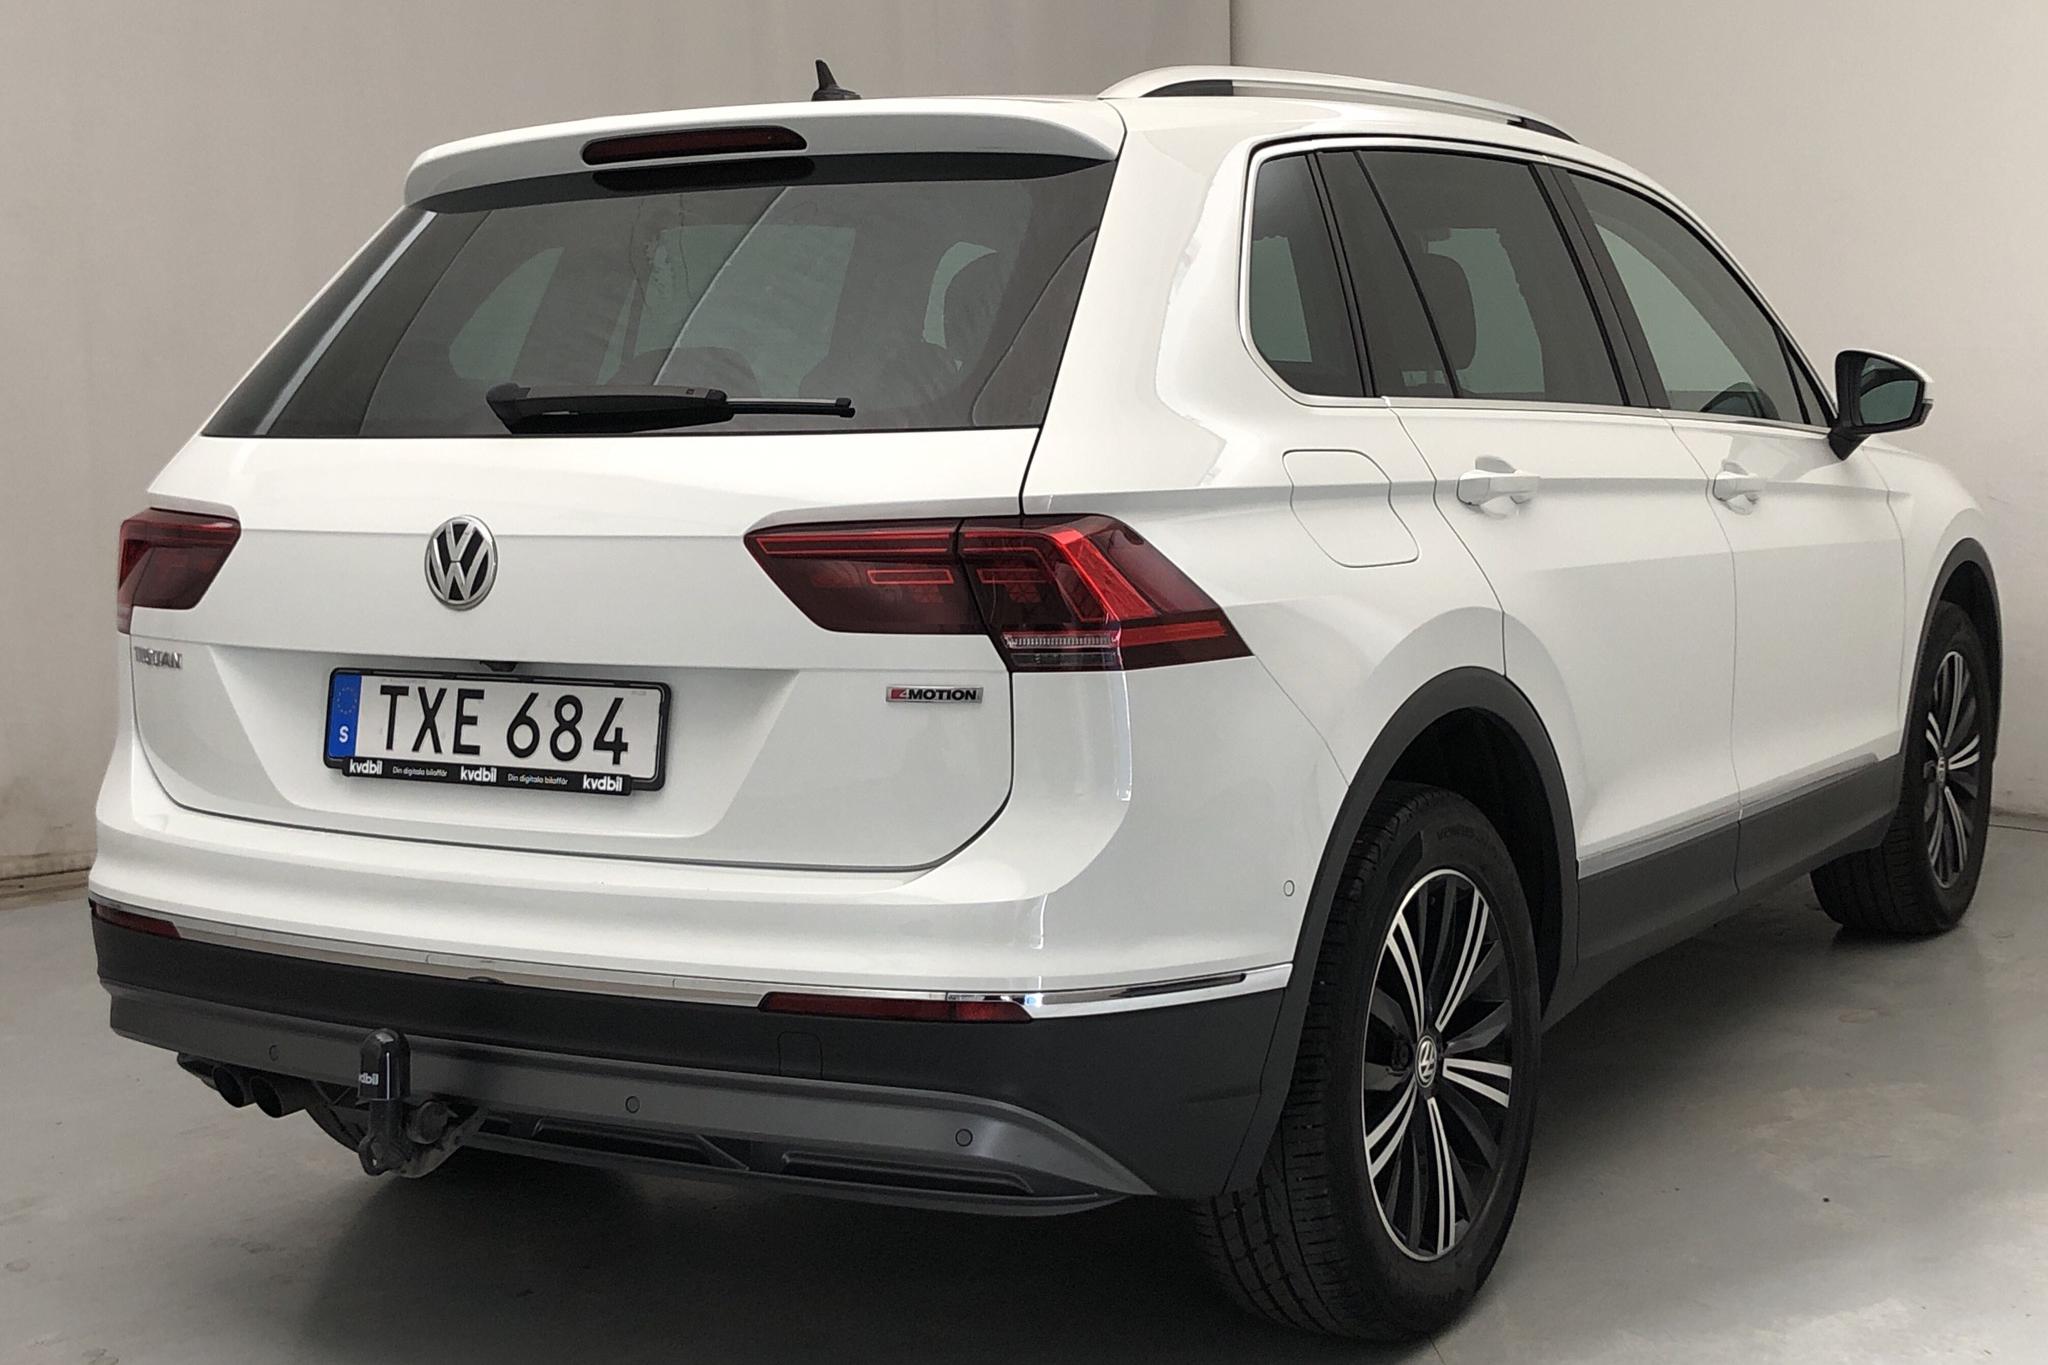 VW Tiguan 2.0 TDI 4MOTION (190hk) - 67 370 km - Automatic - white - 2019